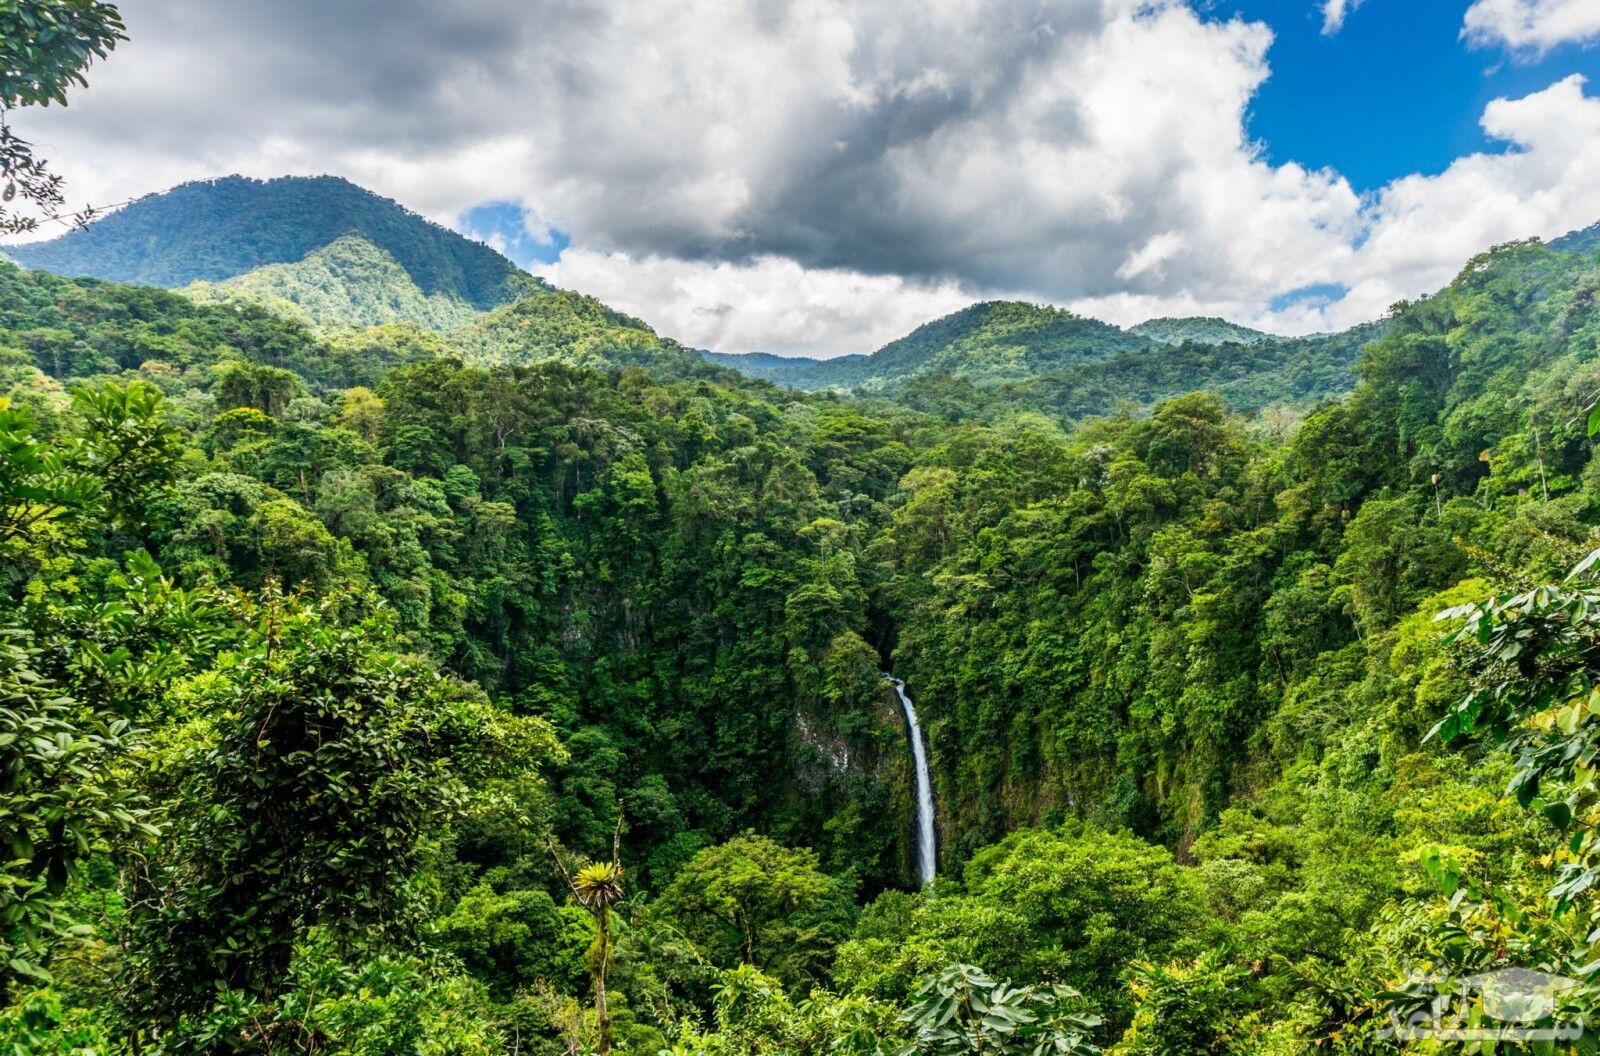 کشور کاستاریکا در کدام قاره واقع شده و جاذبه های گردشگری مهم و زیبای آن کدامند؟